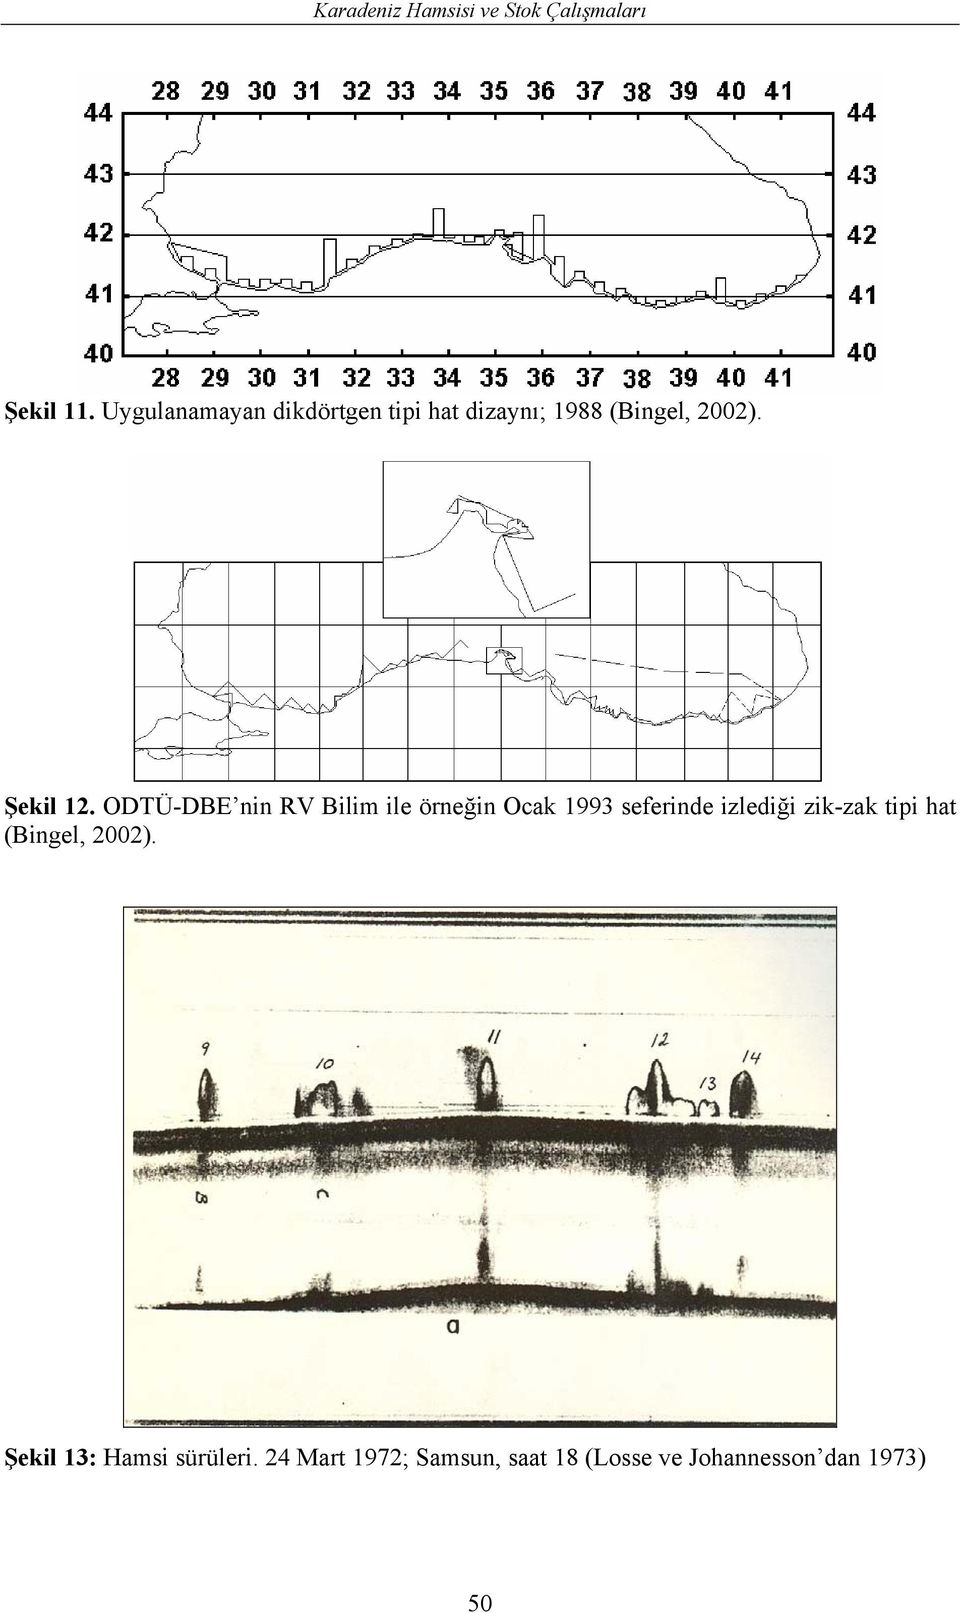 ODTÜ-DBE nin RV Bilim ile örneğin Ocak 1993 seferinde izlediği zik-zak tipi